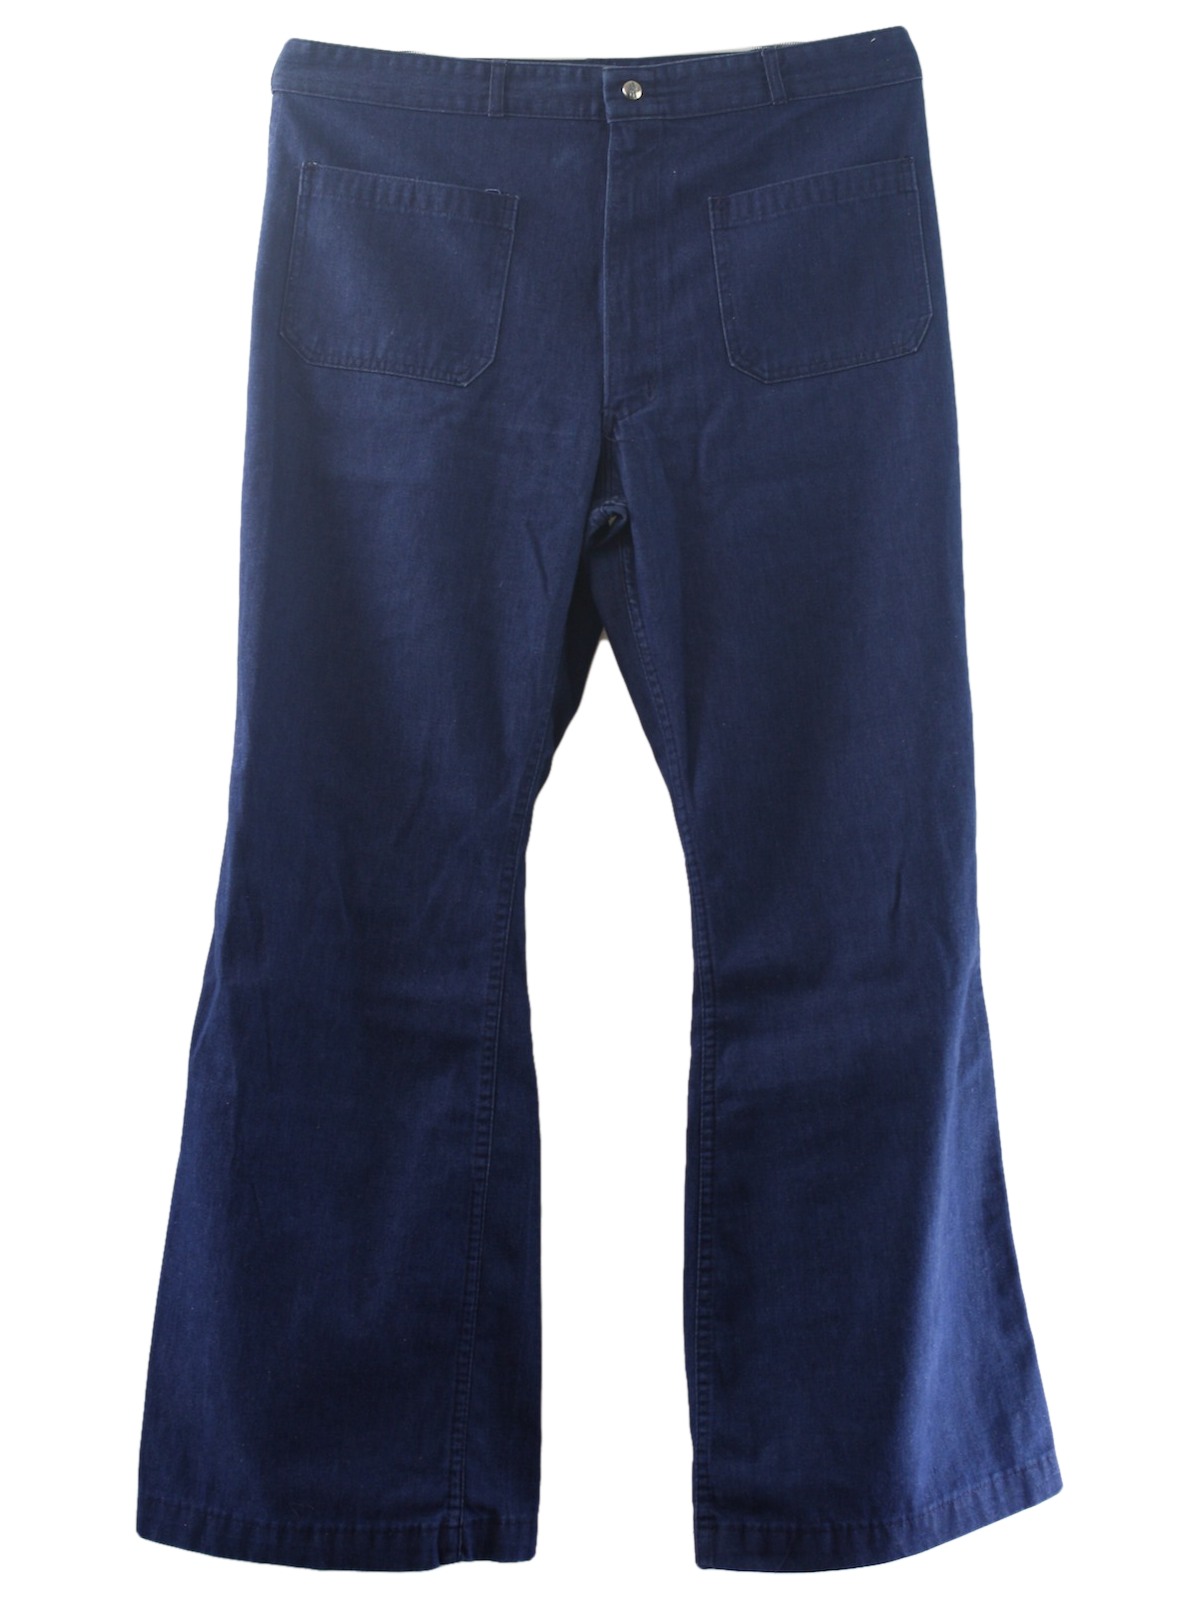 Vintage Seafarer 1970s Bellbottom Pants: 70s -Seafarer- Mens dark blue ...